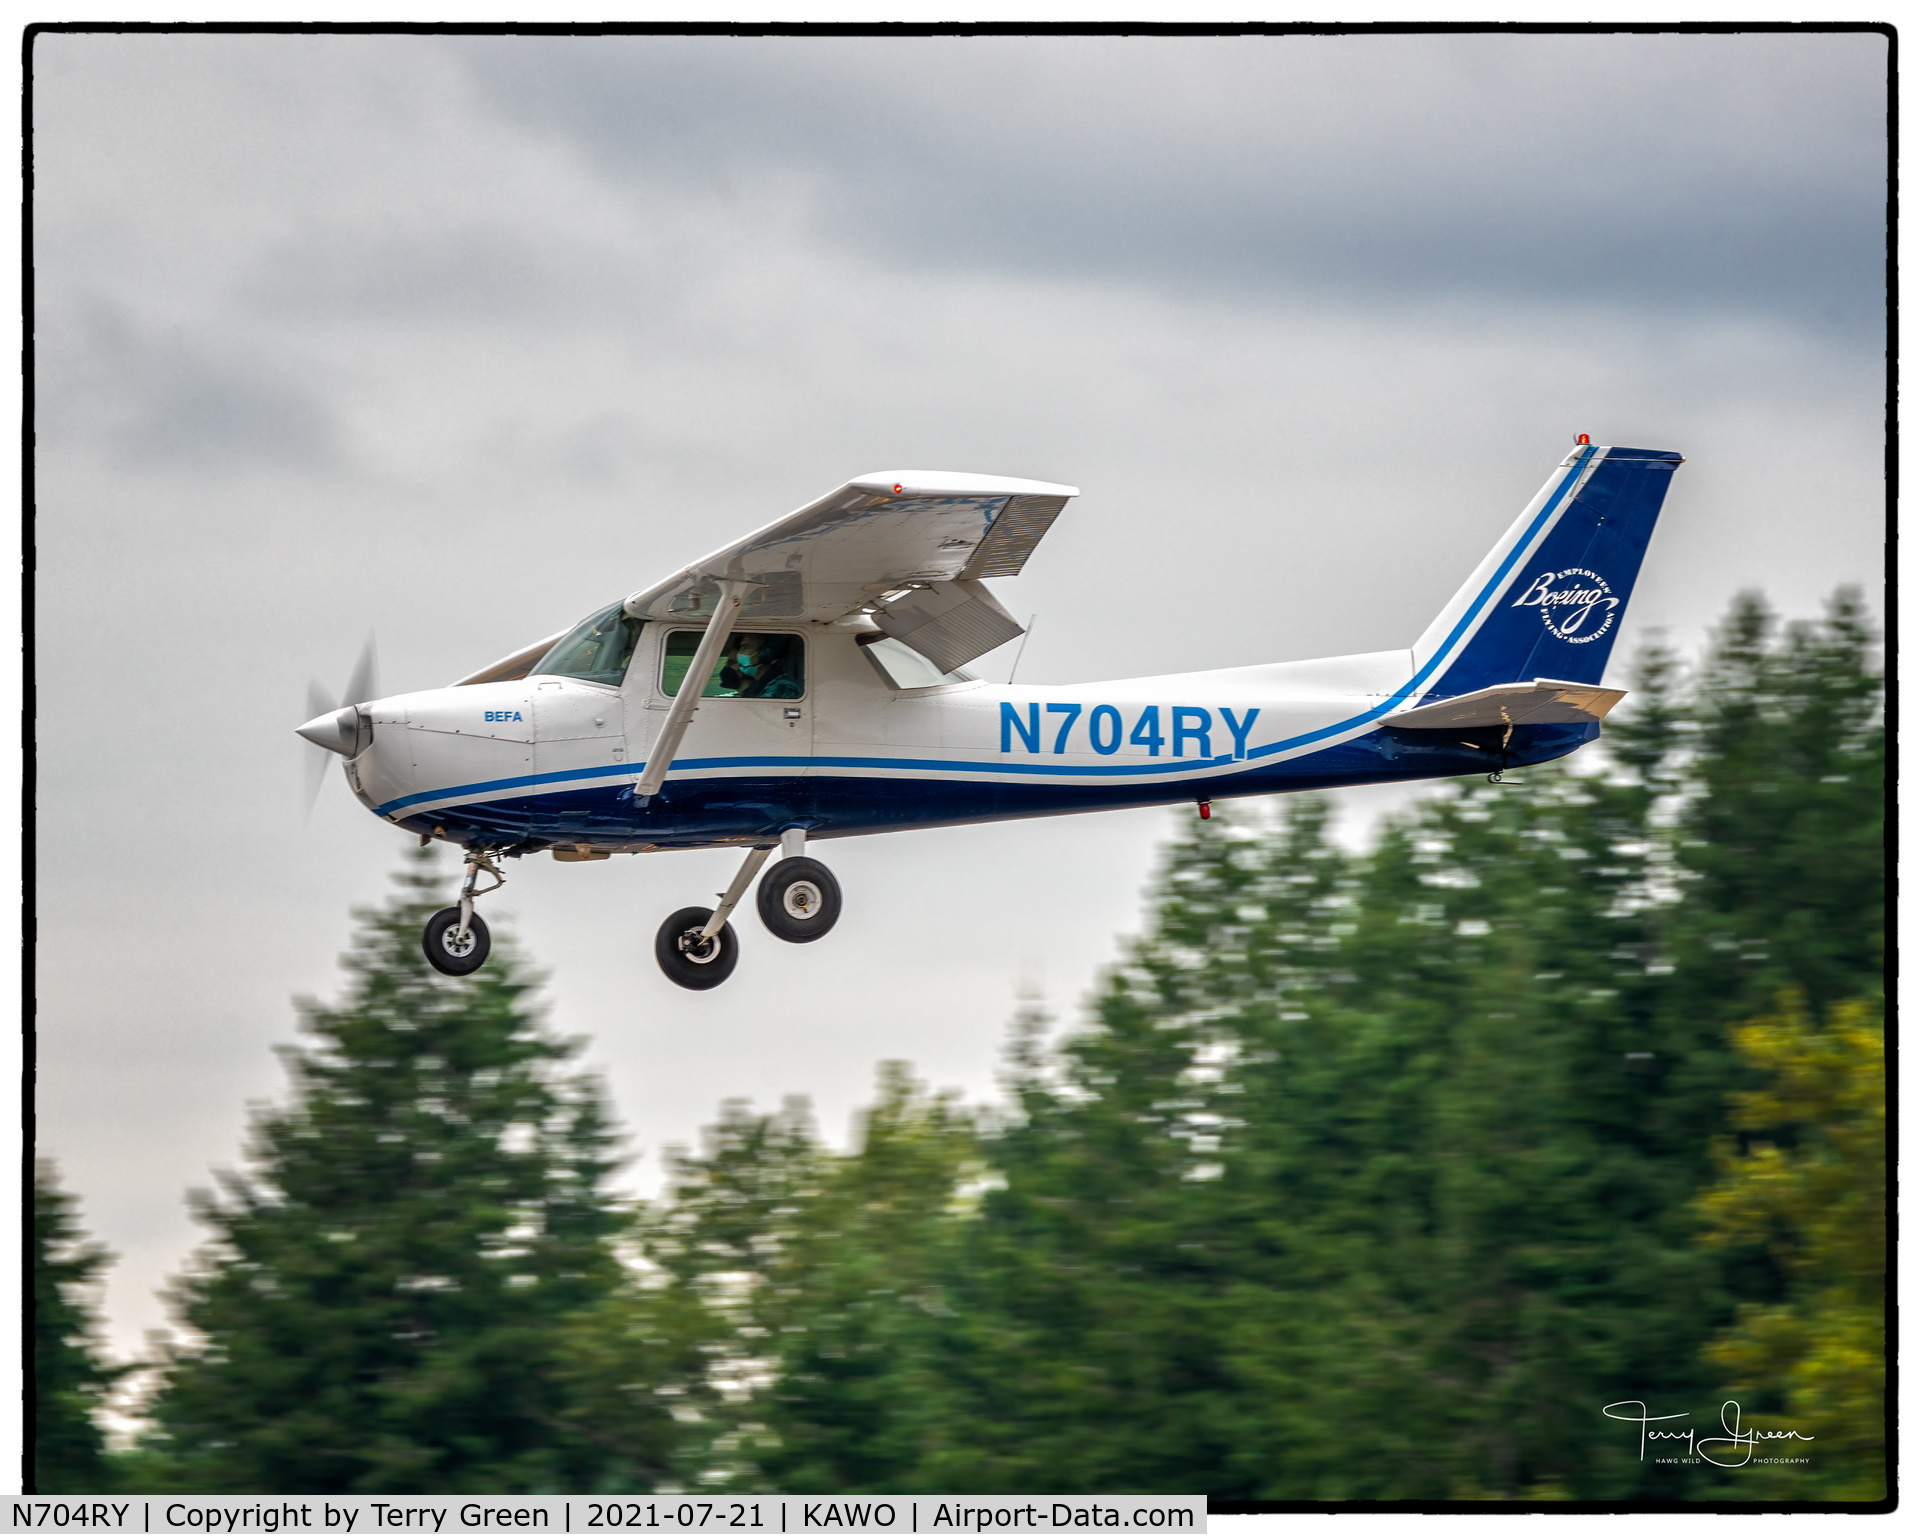 N704RY, 1976 Cessna 150M C/N 15078825, KAWO